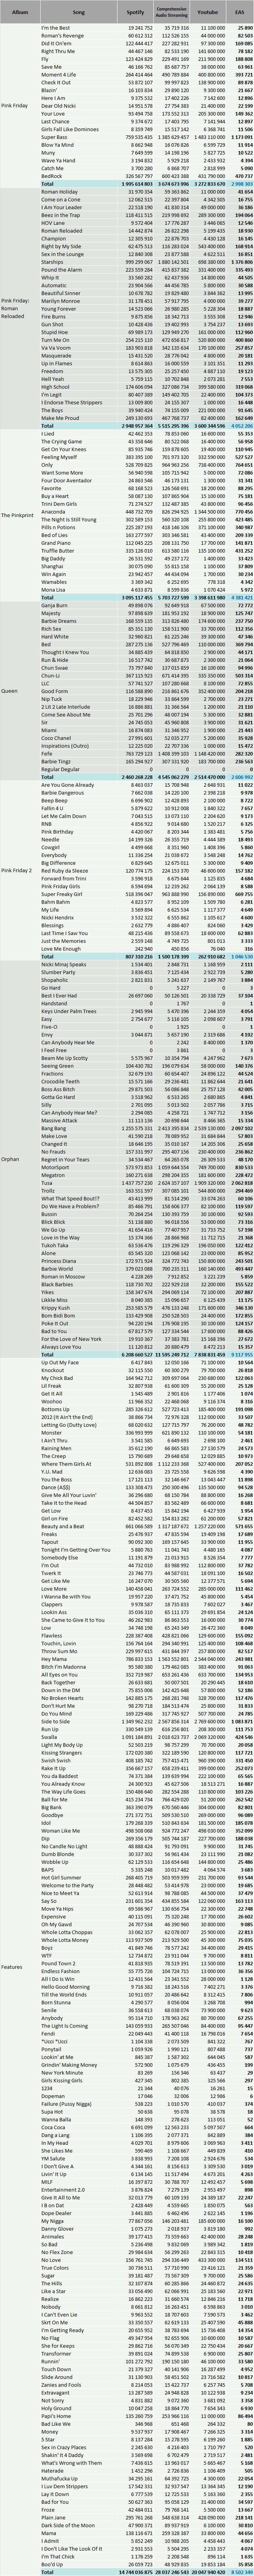 CSPC Nicki Minaj detailed discography streaming statistics